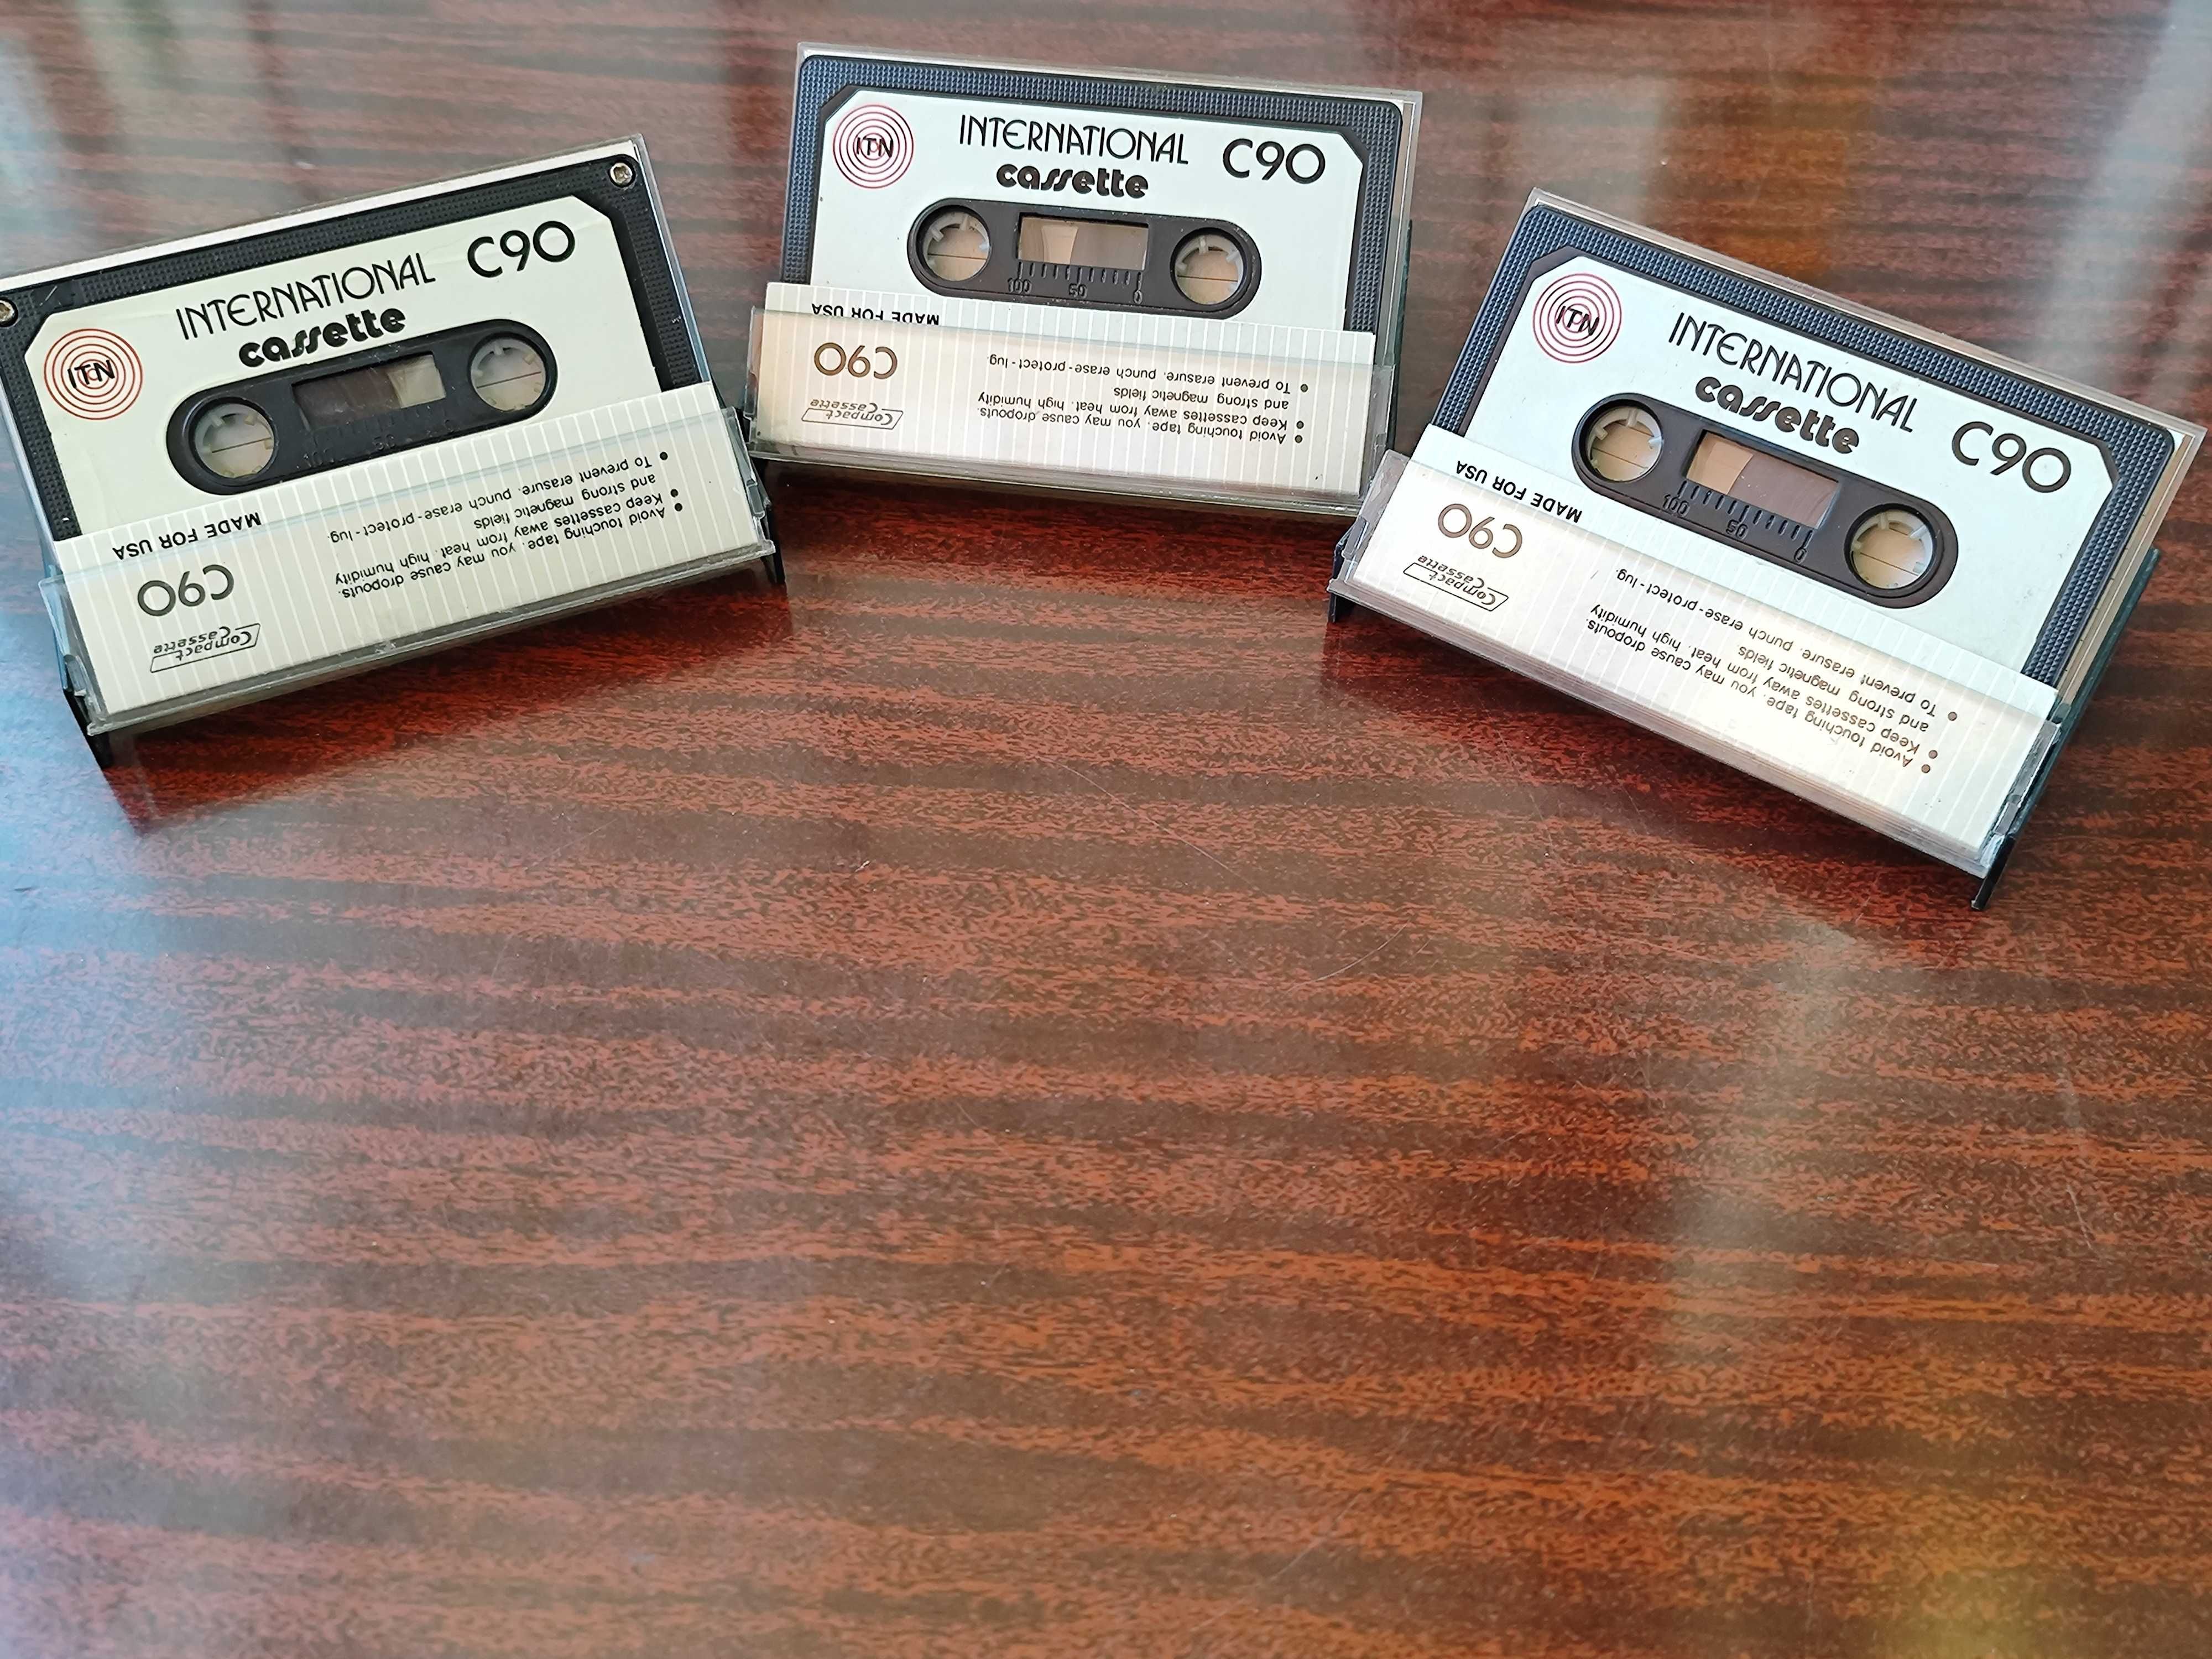 Аудиокассеты TDK D90,60, International C90, Memorex dBC60